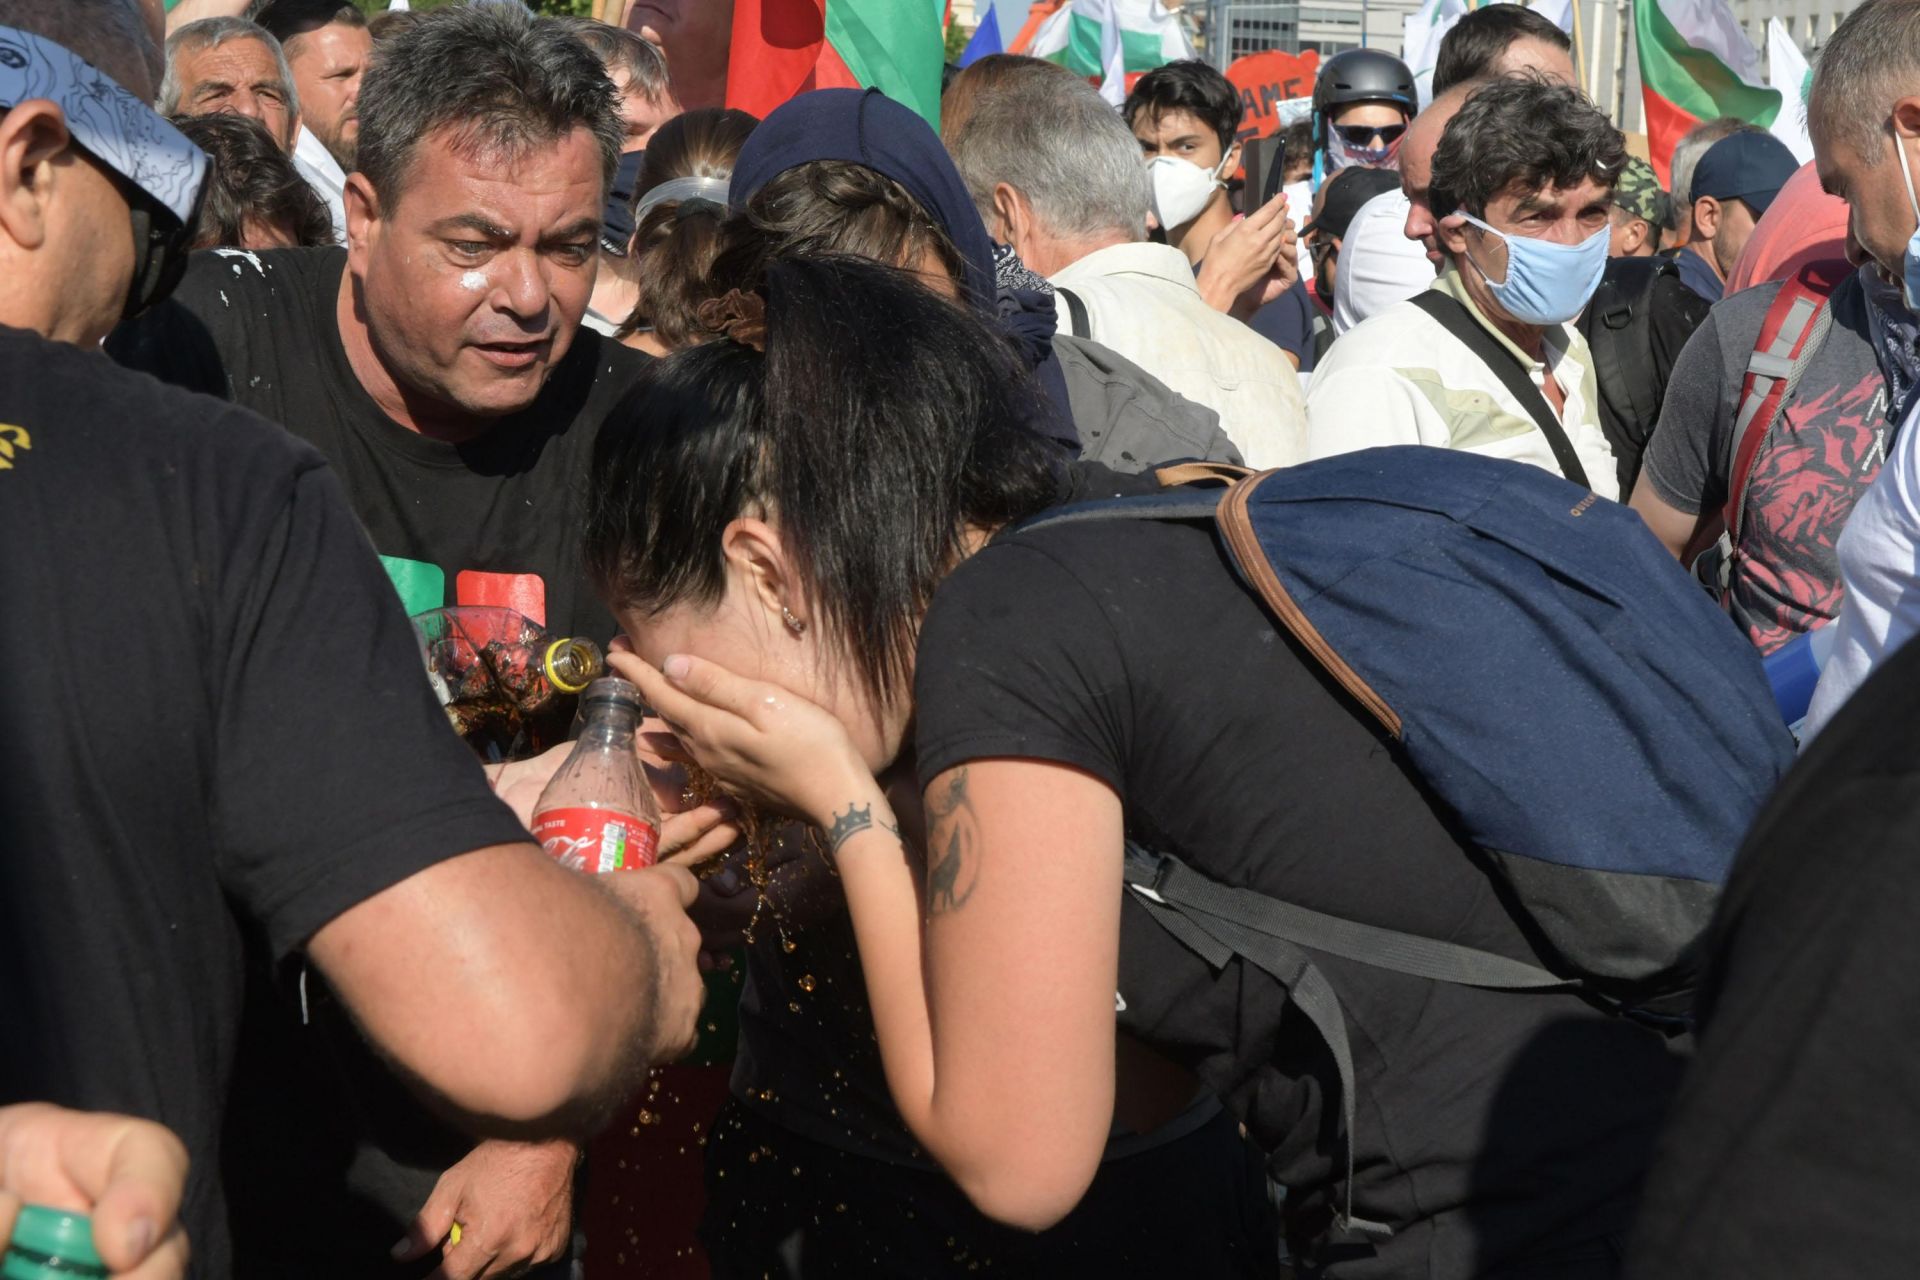 Към 10.30 ч втори опит за пробив в парламента, полицията отвърна със сълзотворен газ. Много полицаи и граждани пострадаха